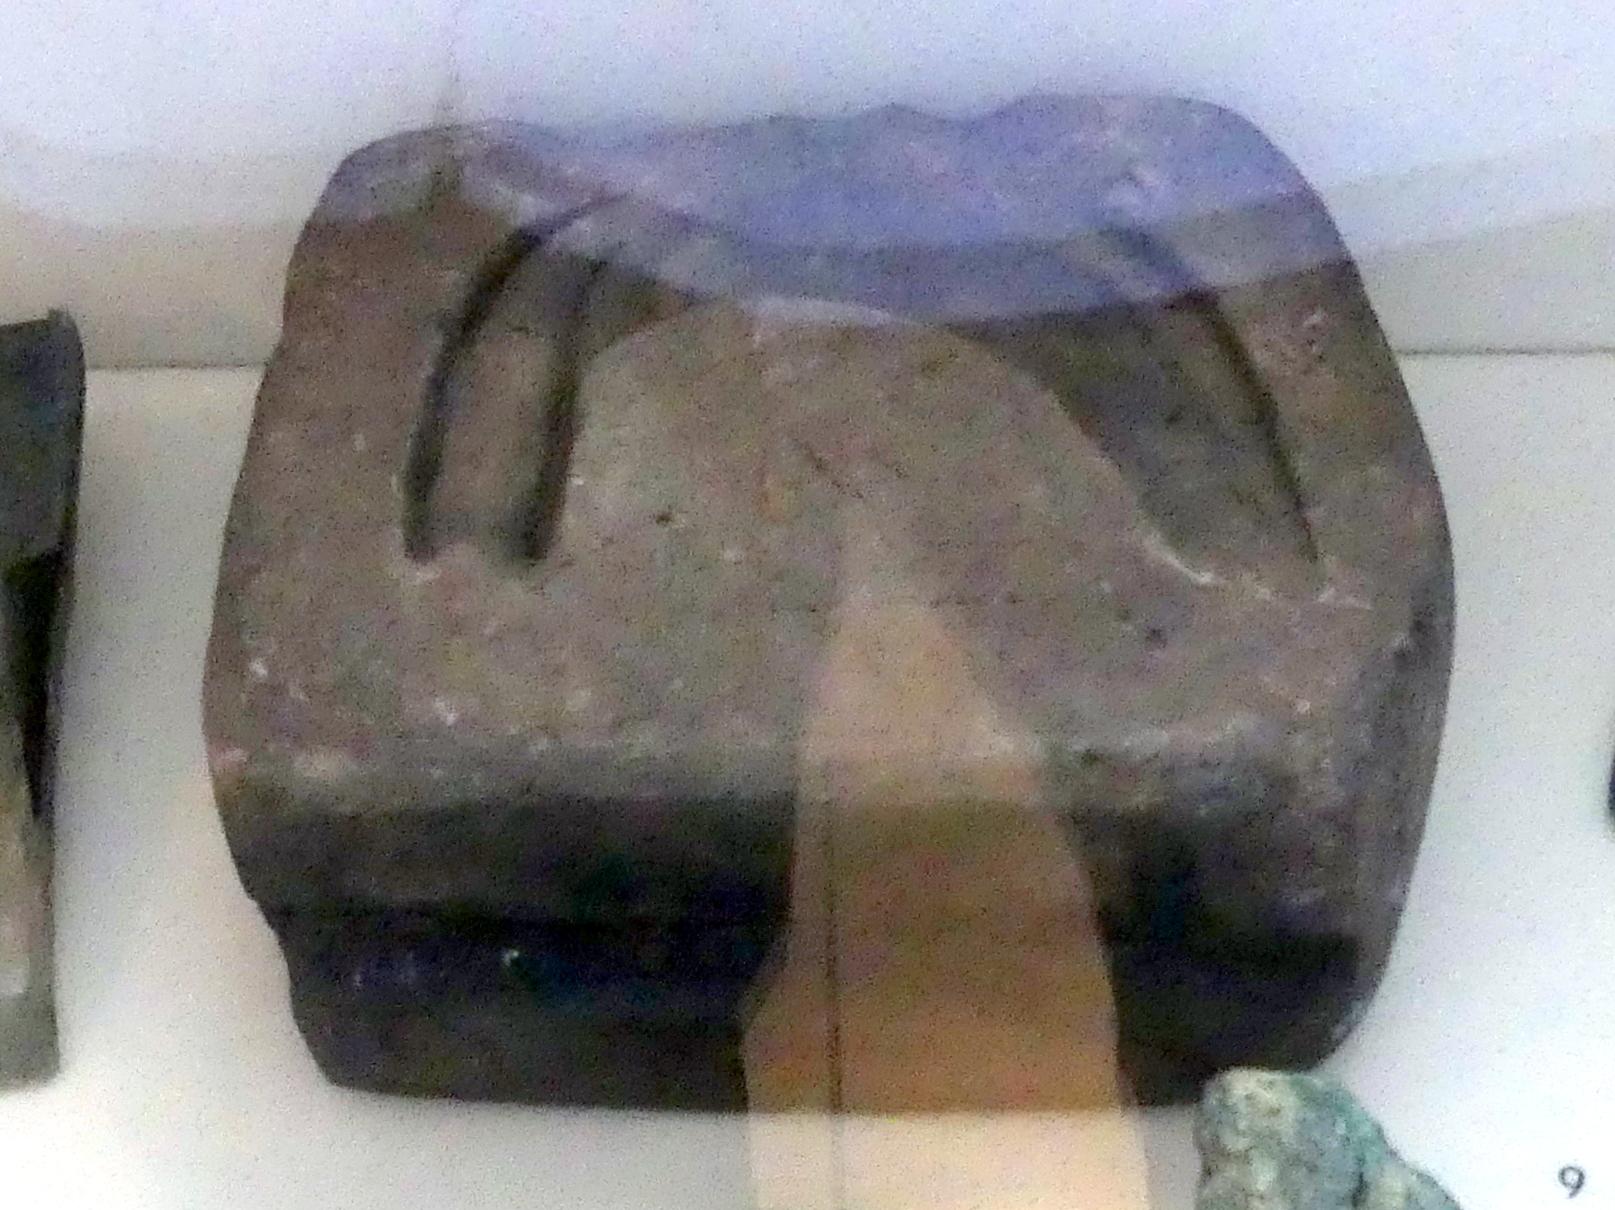 Gußform für Sicheln, Urnenfelderzeit, 1400 - 700 v. Chr., 1200 - 800 v. Chr., Bild 1/2